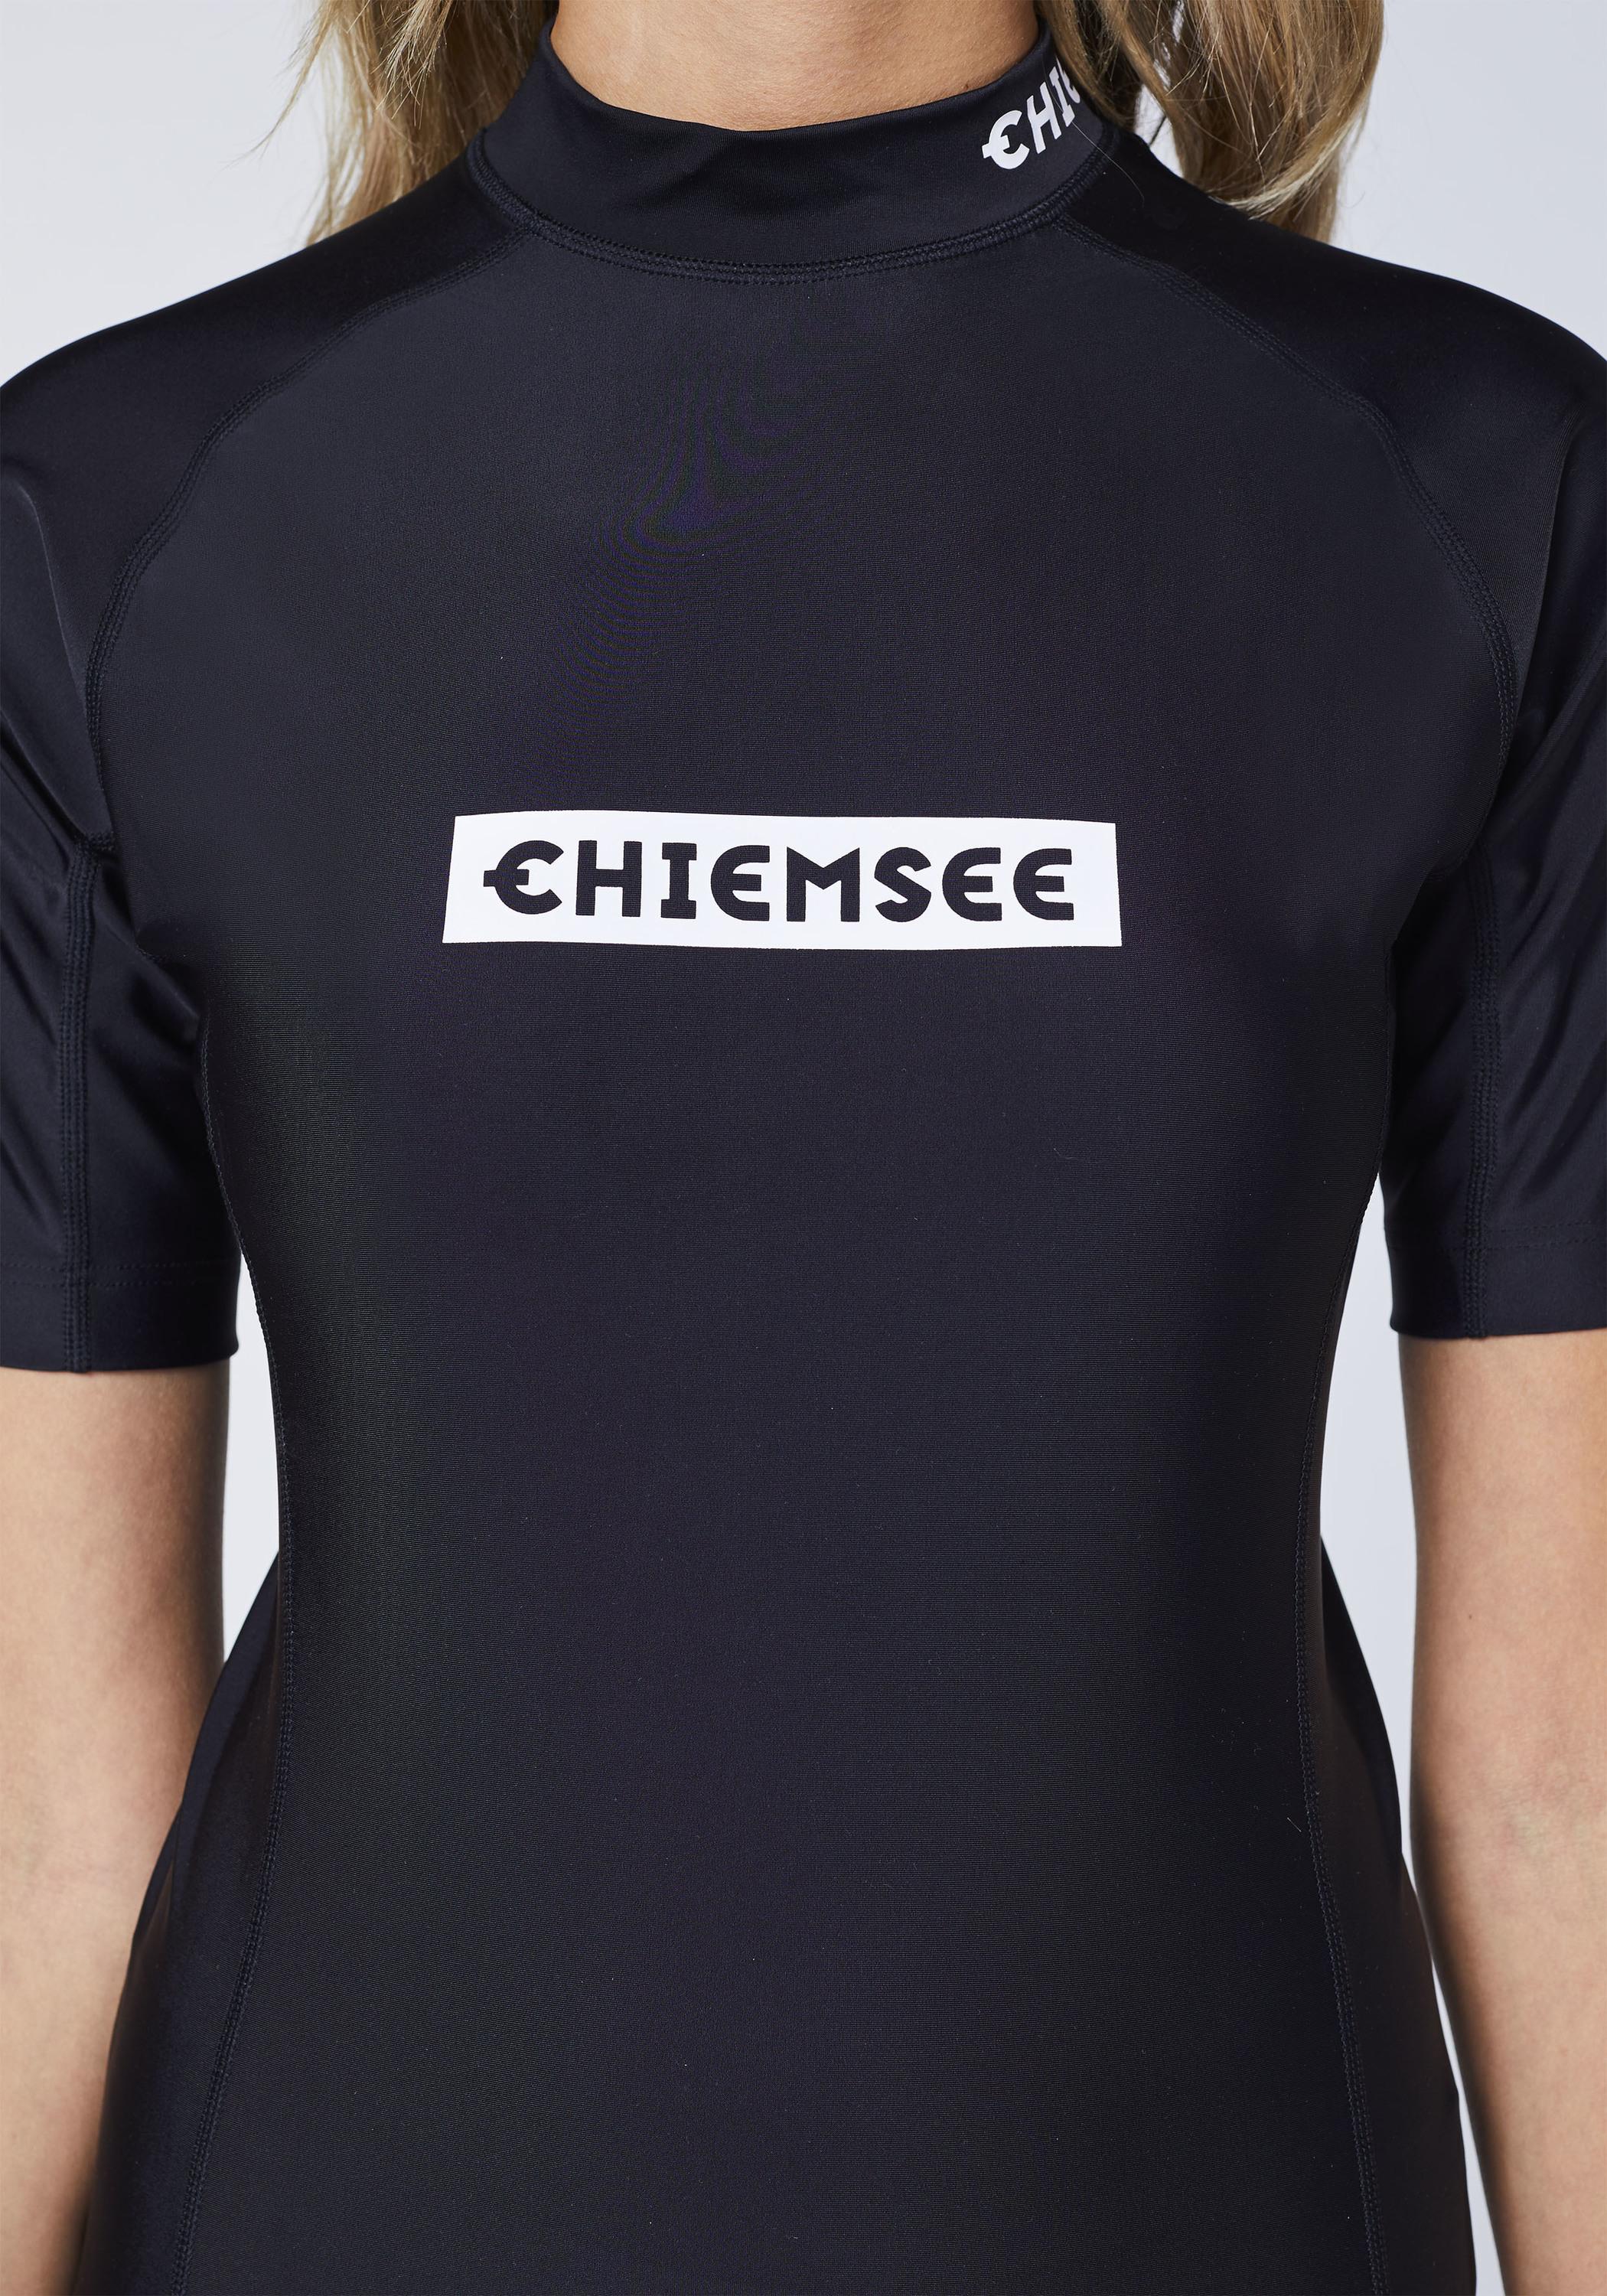 SportScheck Chiemsee von Shop Black Surf Badeshirt Deep new Shirt kaufen im Online